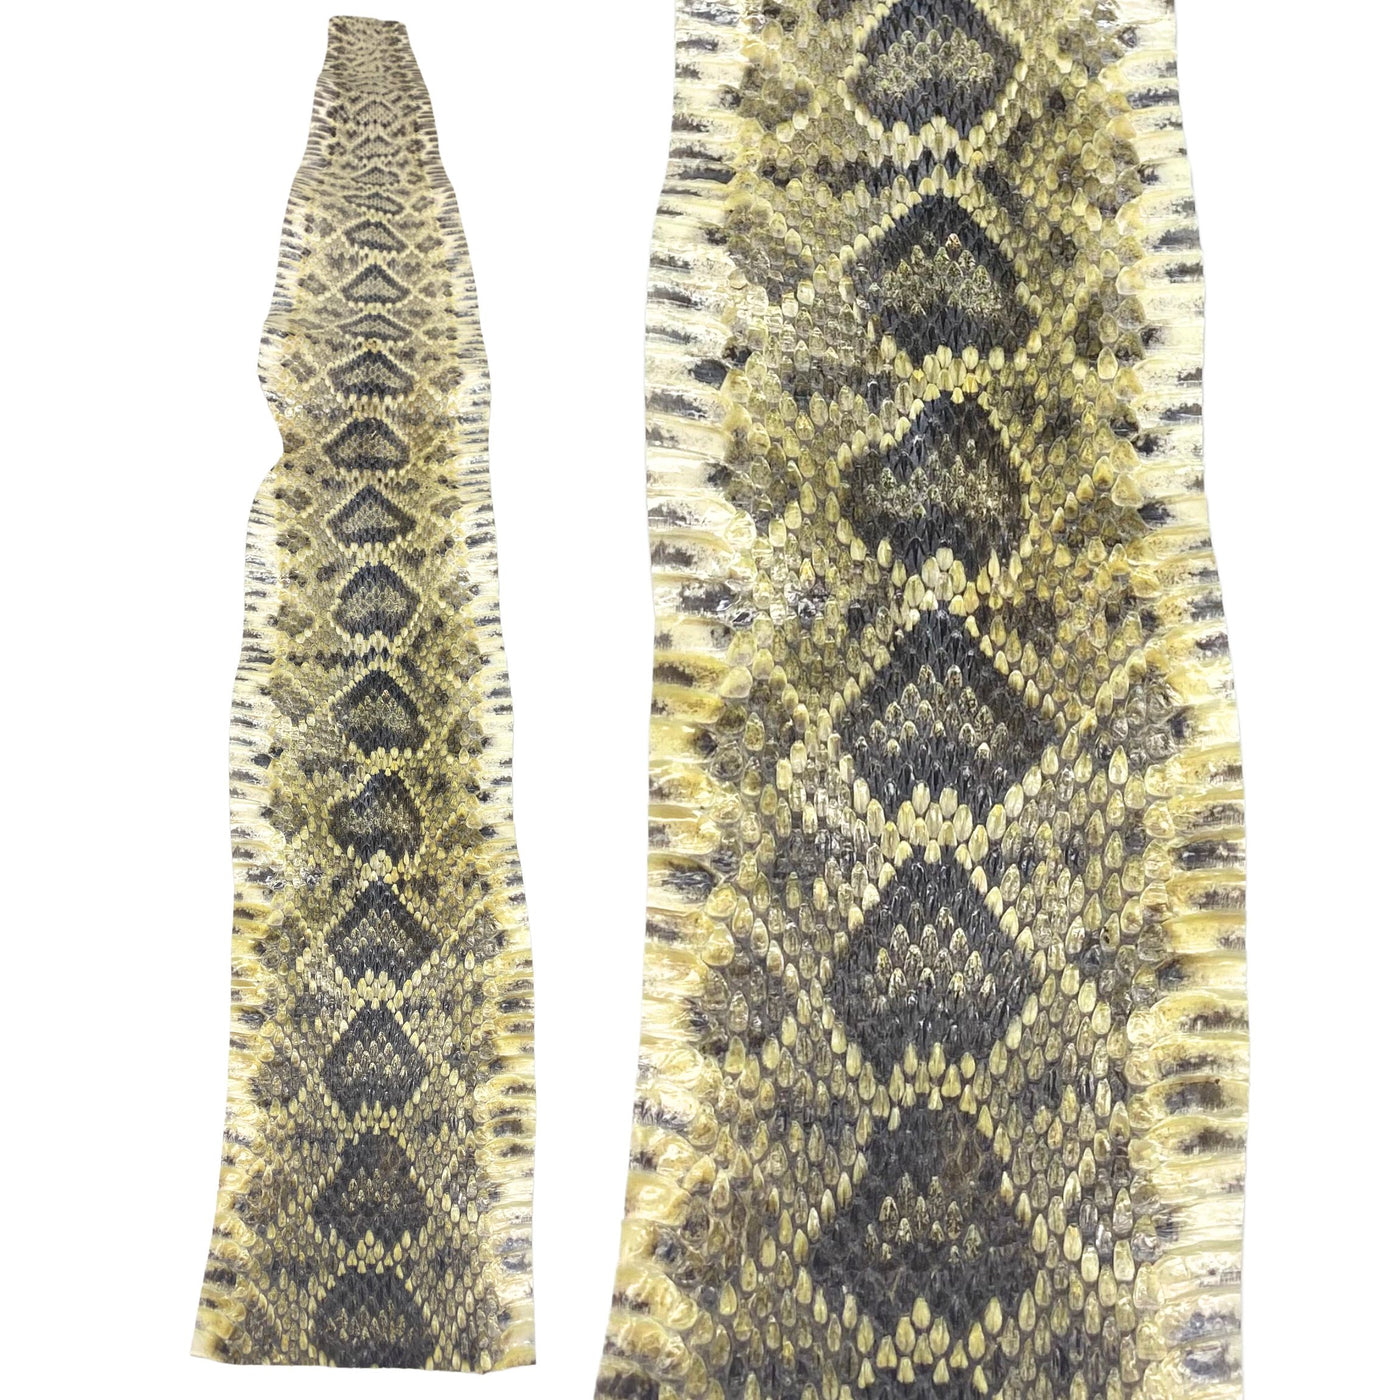 Eastern Rattlesnake Snake Skins - Diamondback Snakeskins — Leather ...